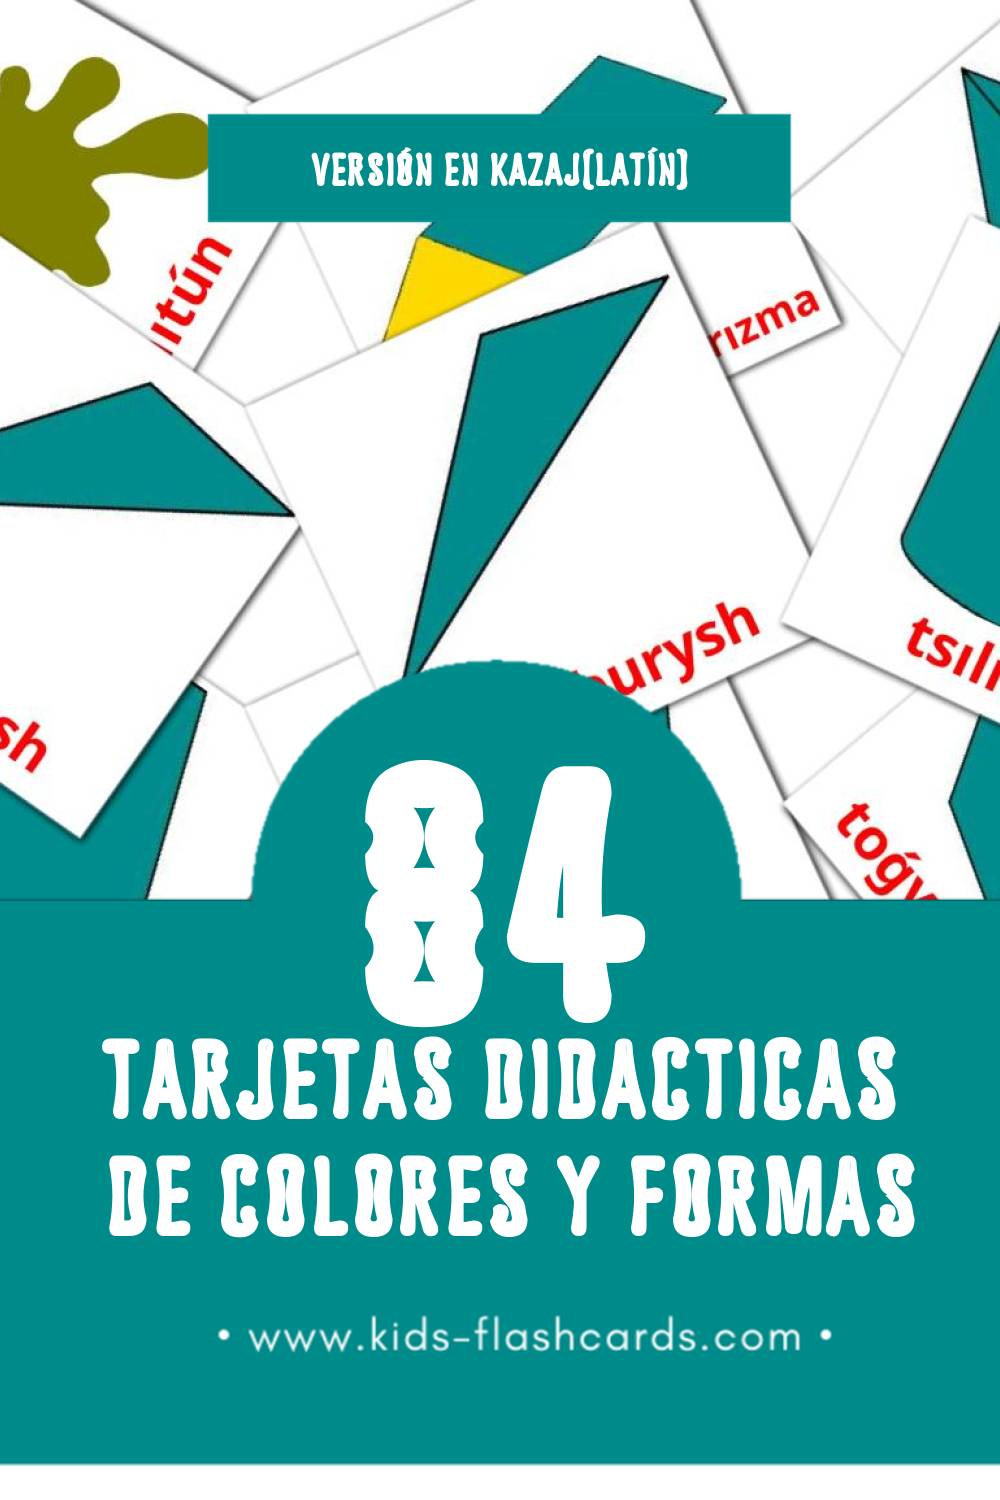 Tarjetas visuales de  Túster men pіshіnder para niños pequeños (84 tarjetas en Kazaj(latín))